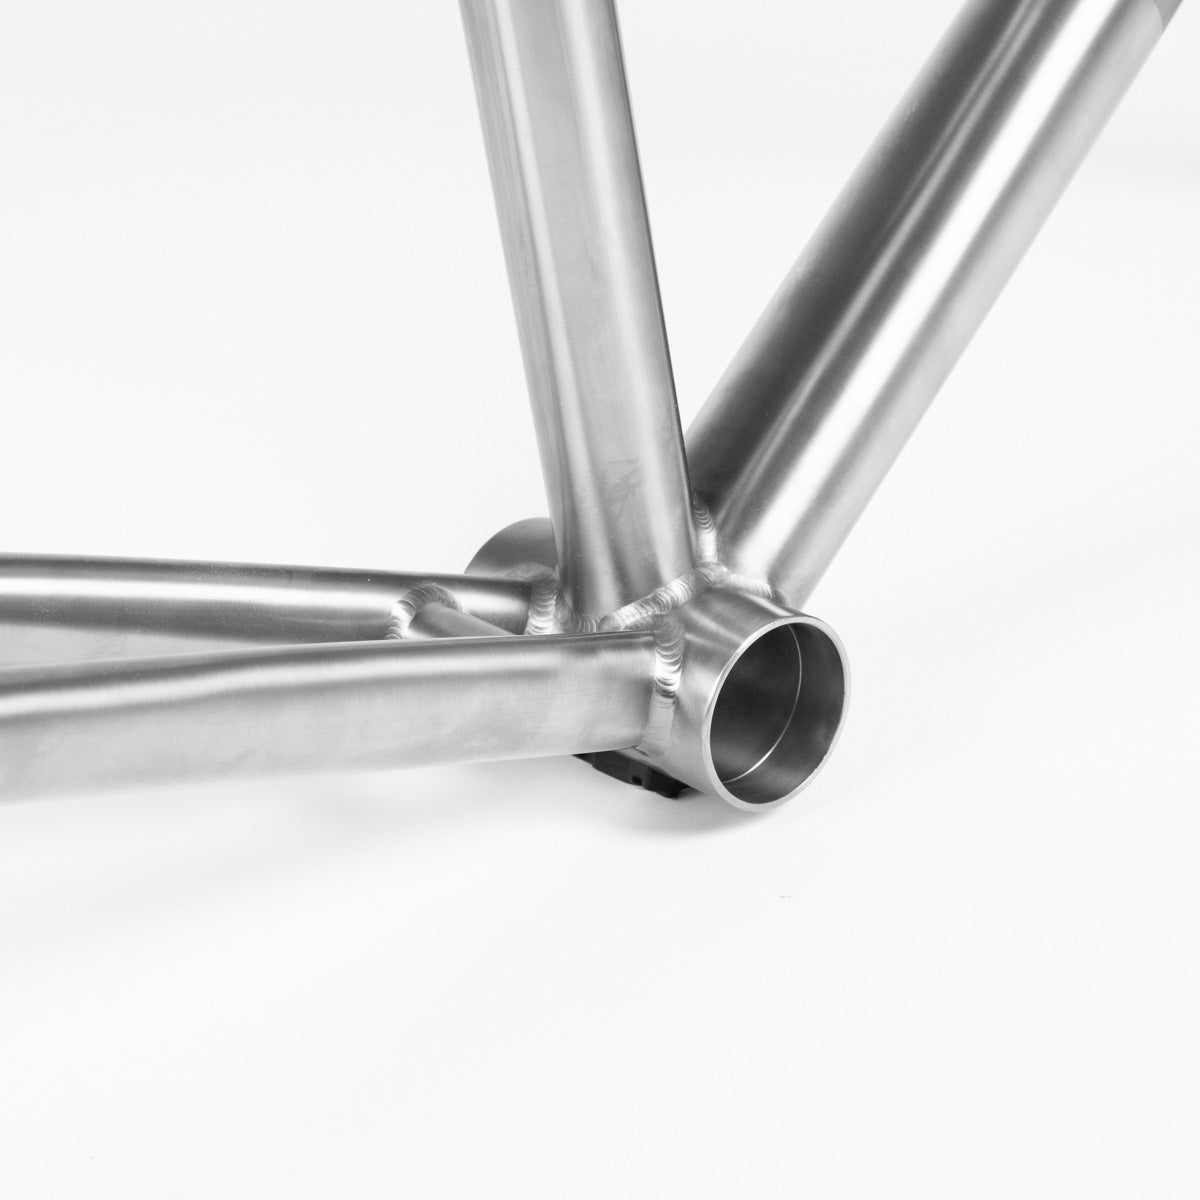 Titanium bicycle frameset